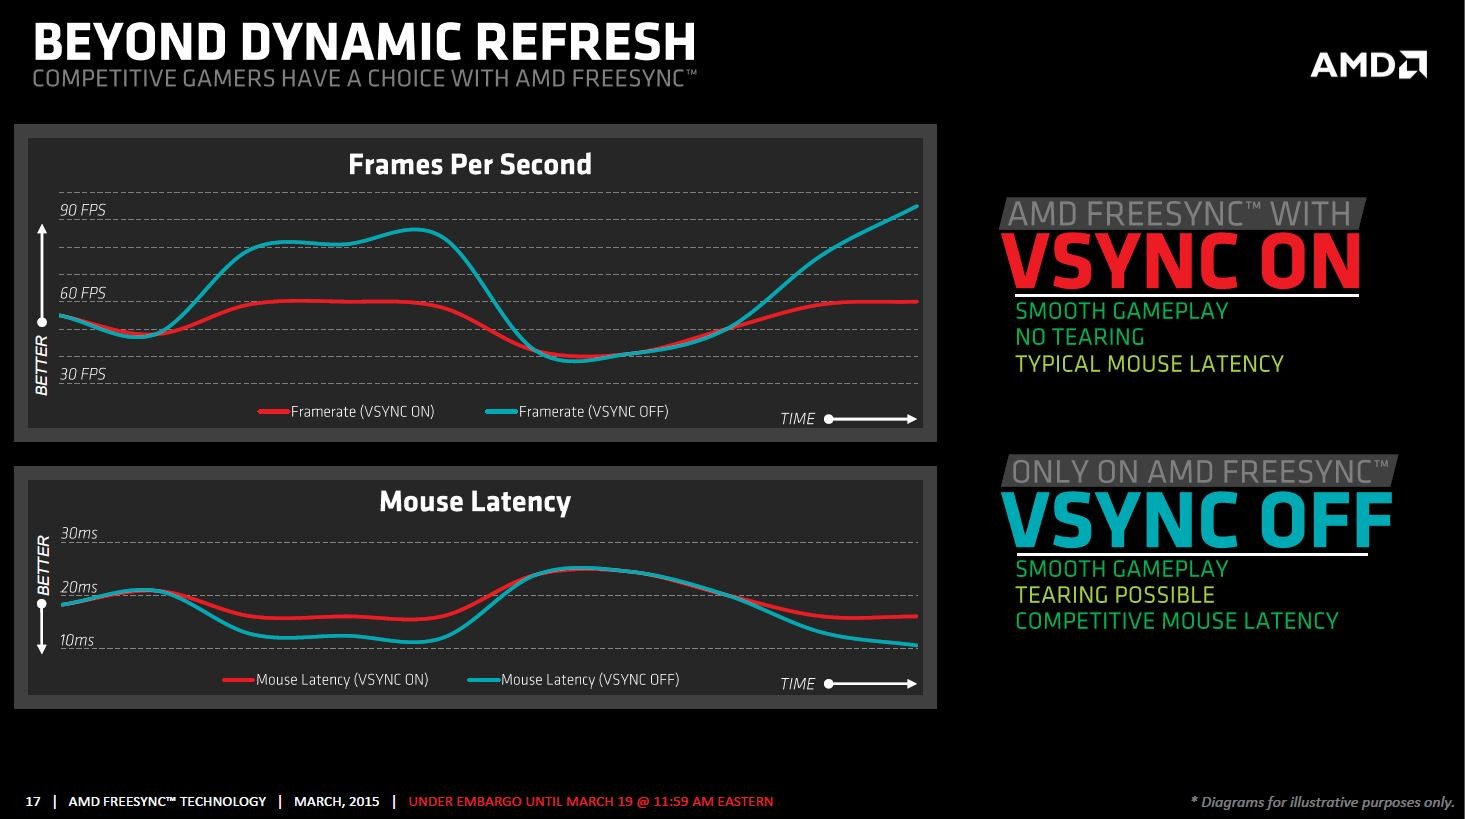 Immagine pubblicata in relazione al seguente contenuto: LG lancia i monitor 29UM67 e 34UM67 che supportano AMD FreeSync | Nome immagine: news22353_AMD-FreeSync-Slide_23.jpg